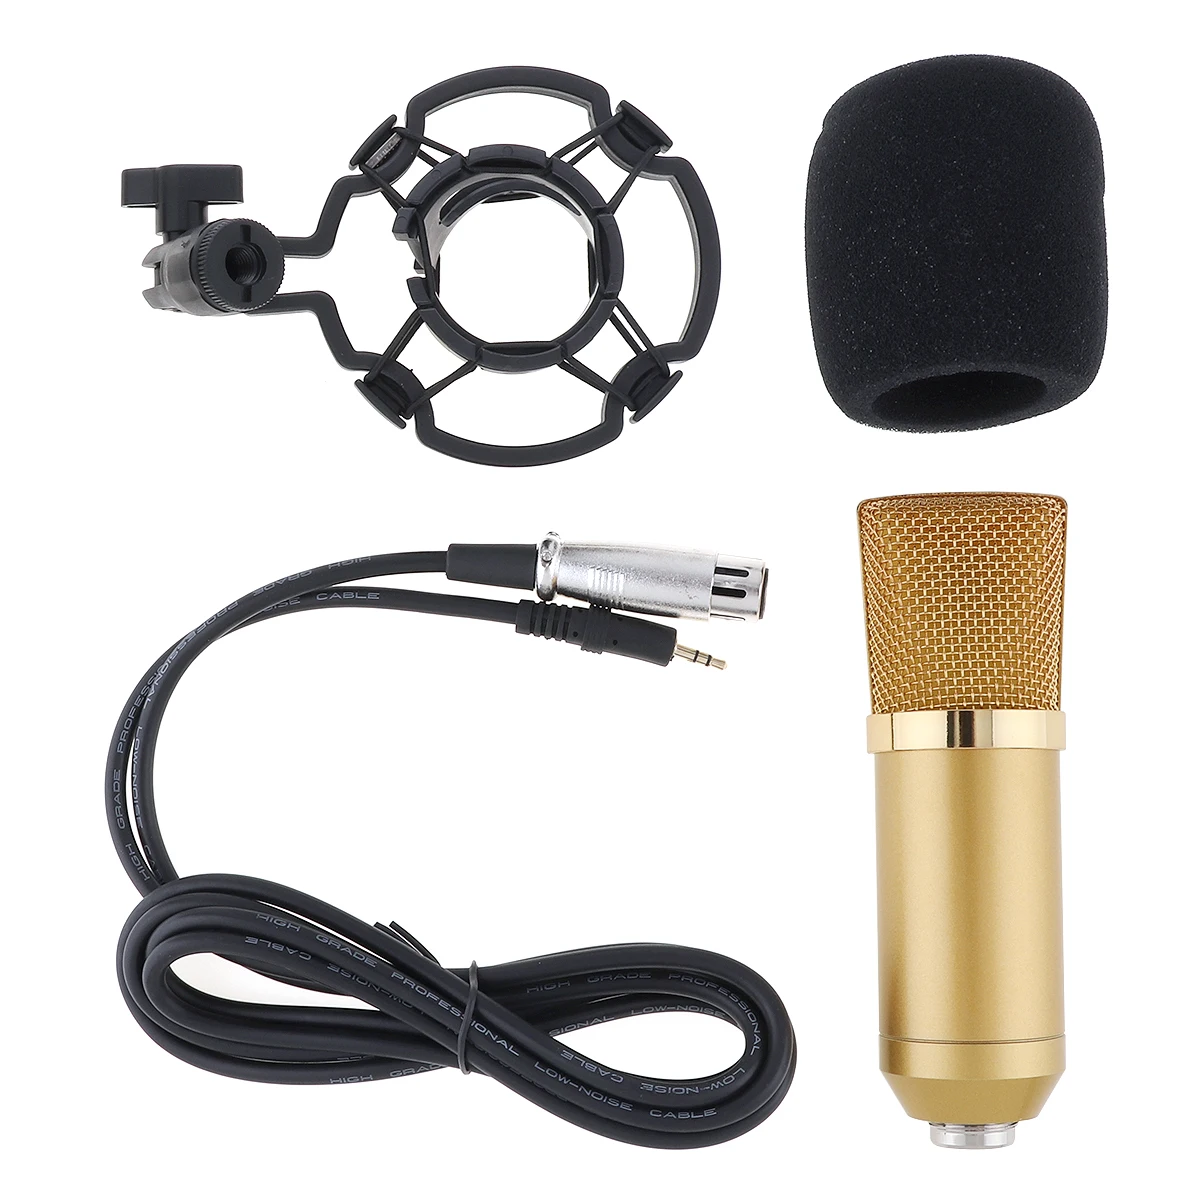 Профессиональный металлический конденсаторный микрофон BM-700 с цепным управлением и позолоченной головкой с большой диафрагмой для студии /KTV